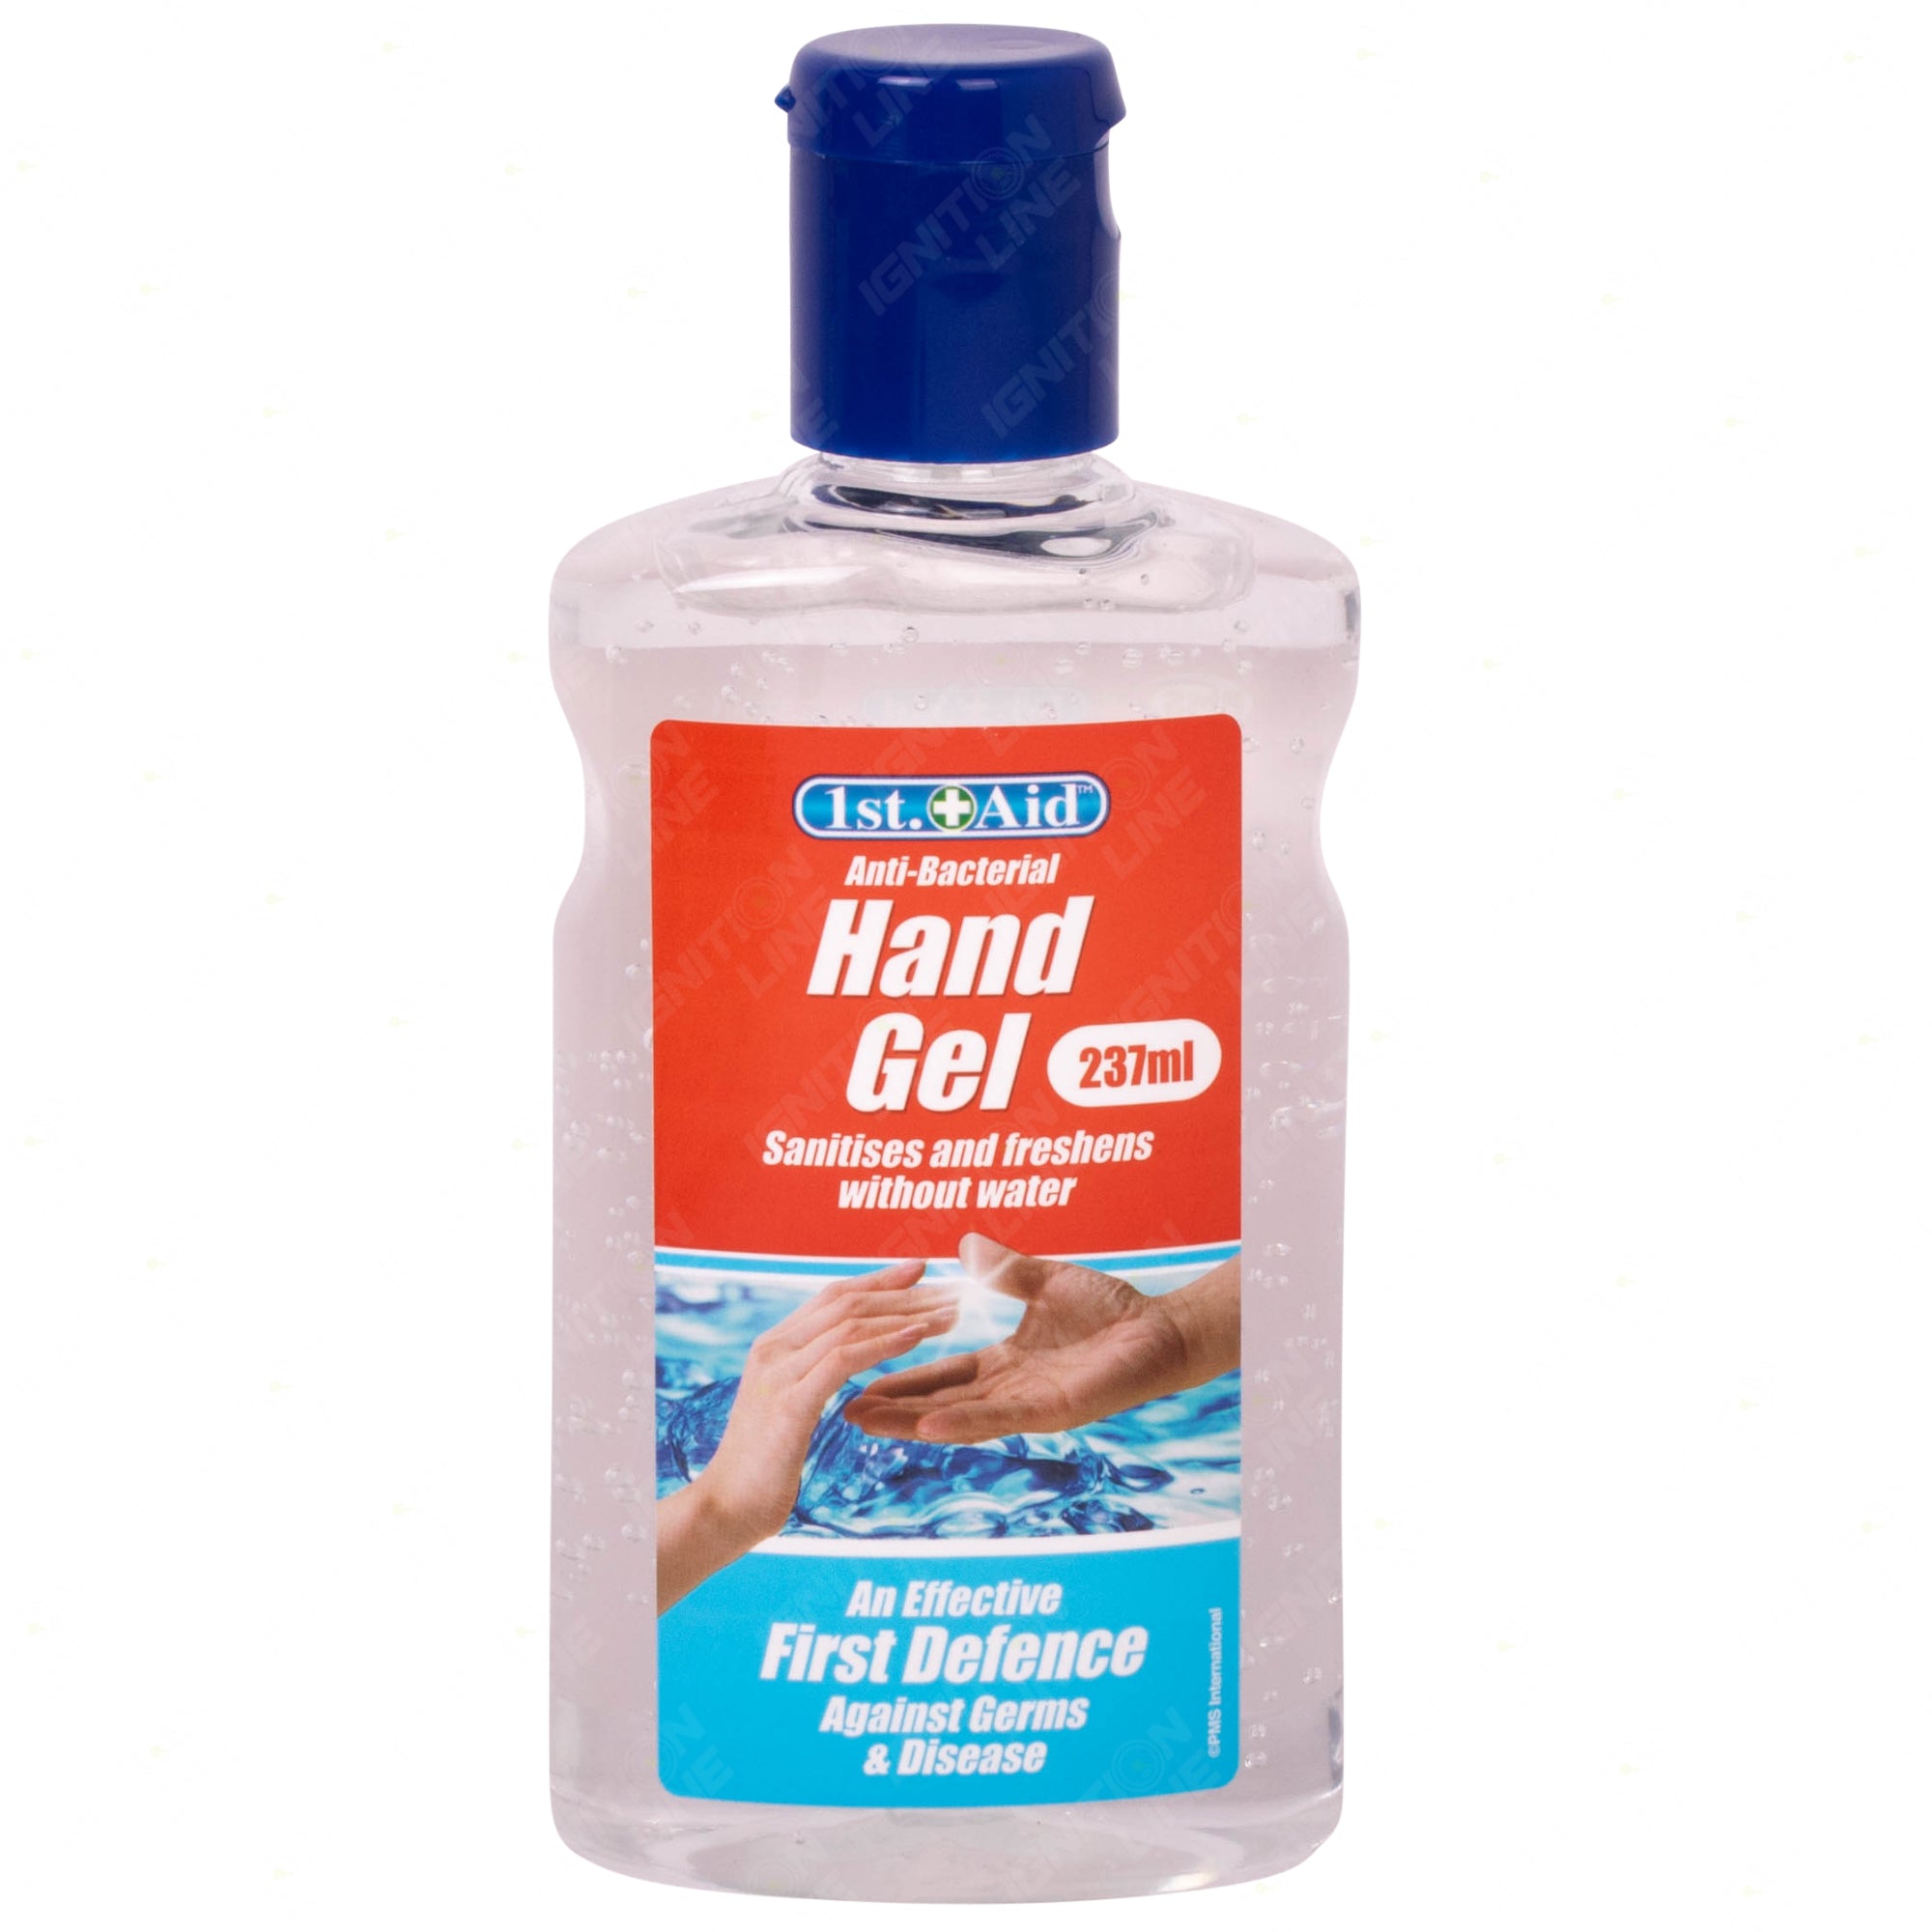 Hand Sanitiser Gel 237ml